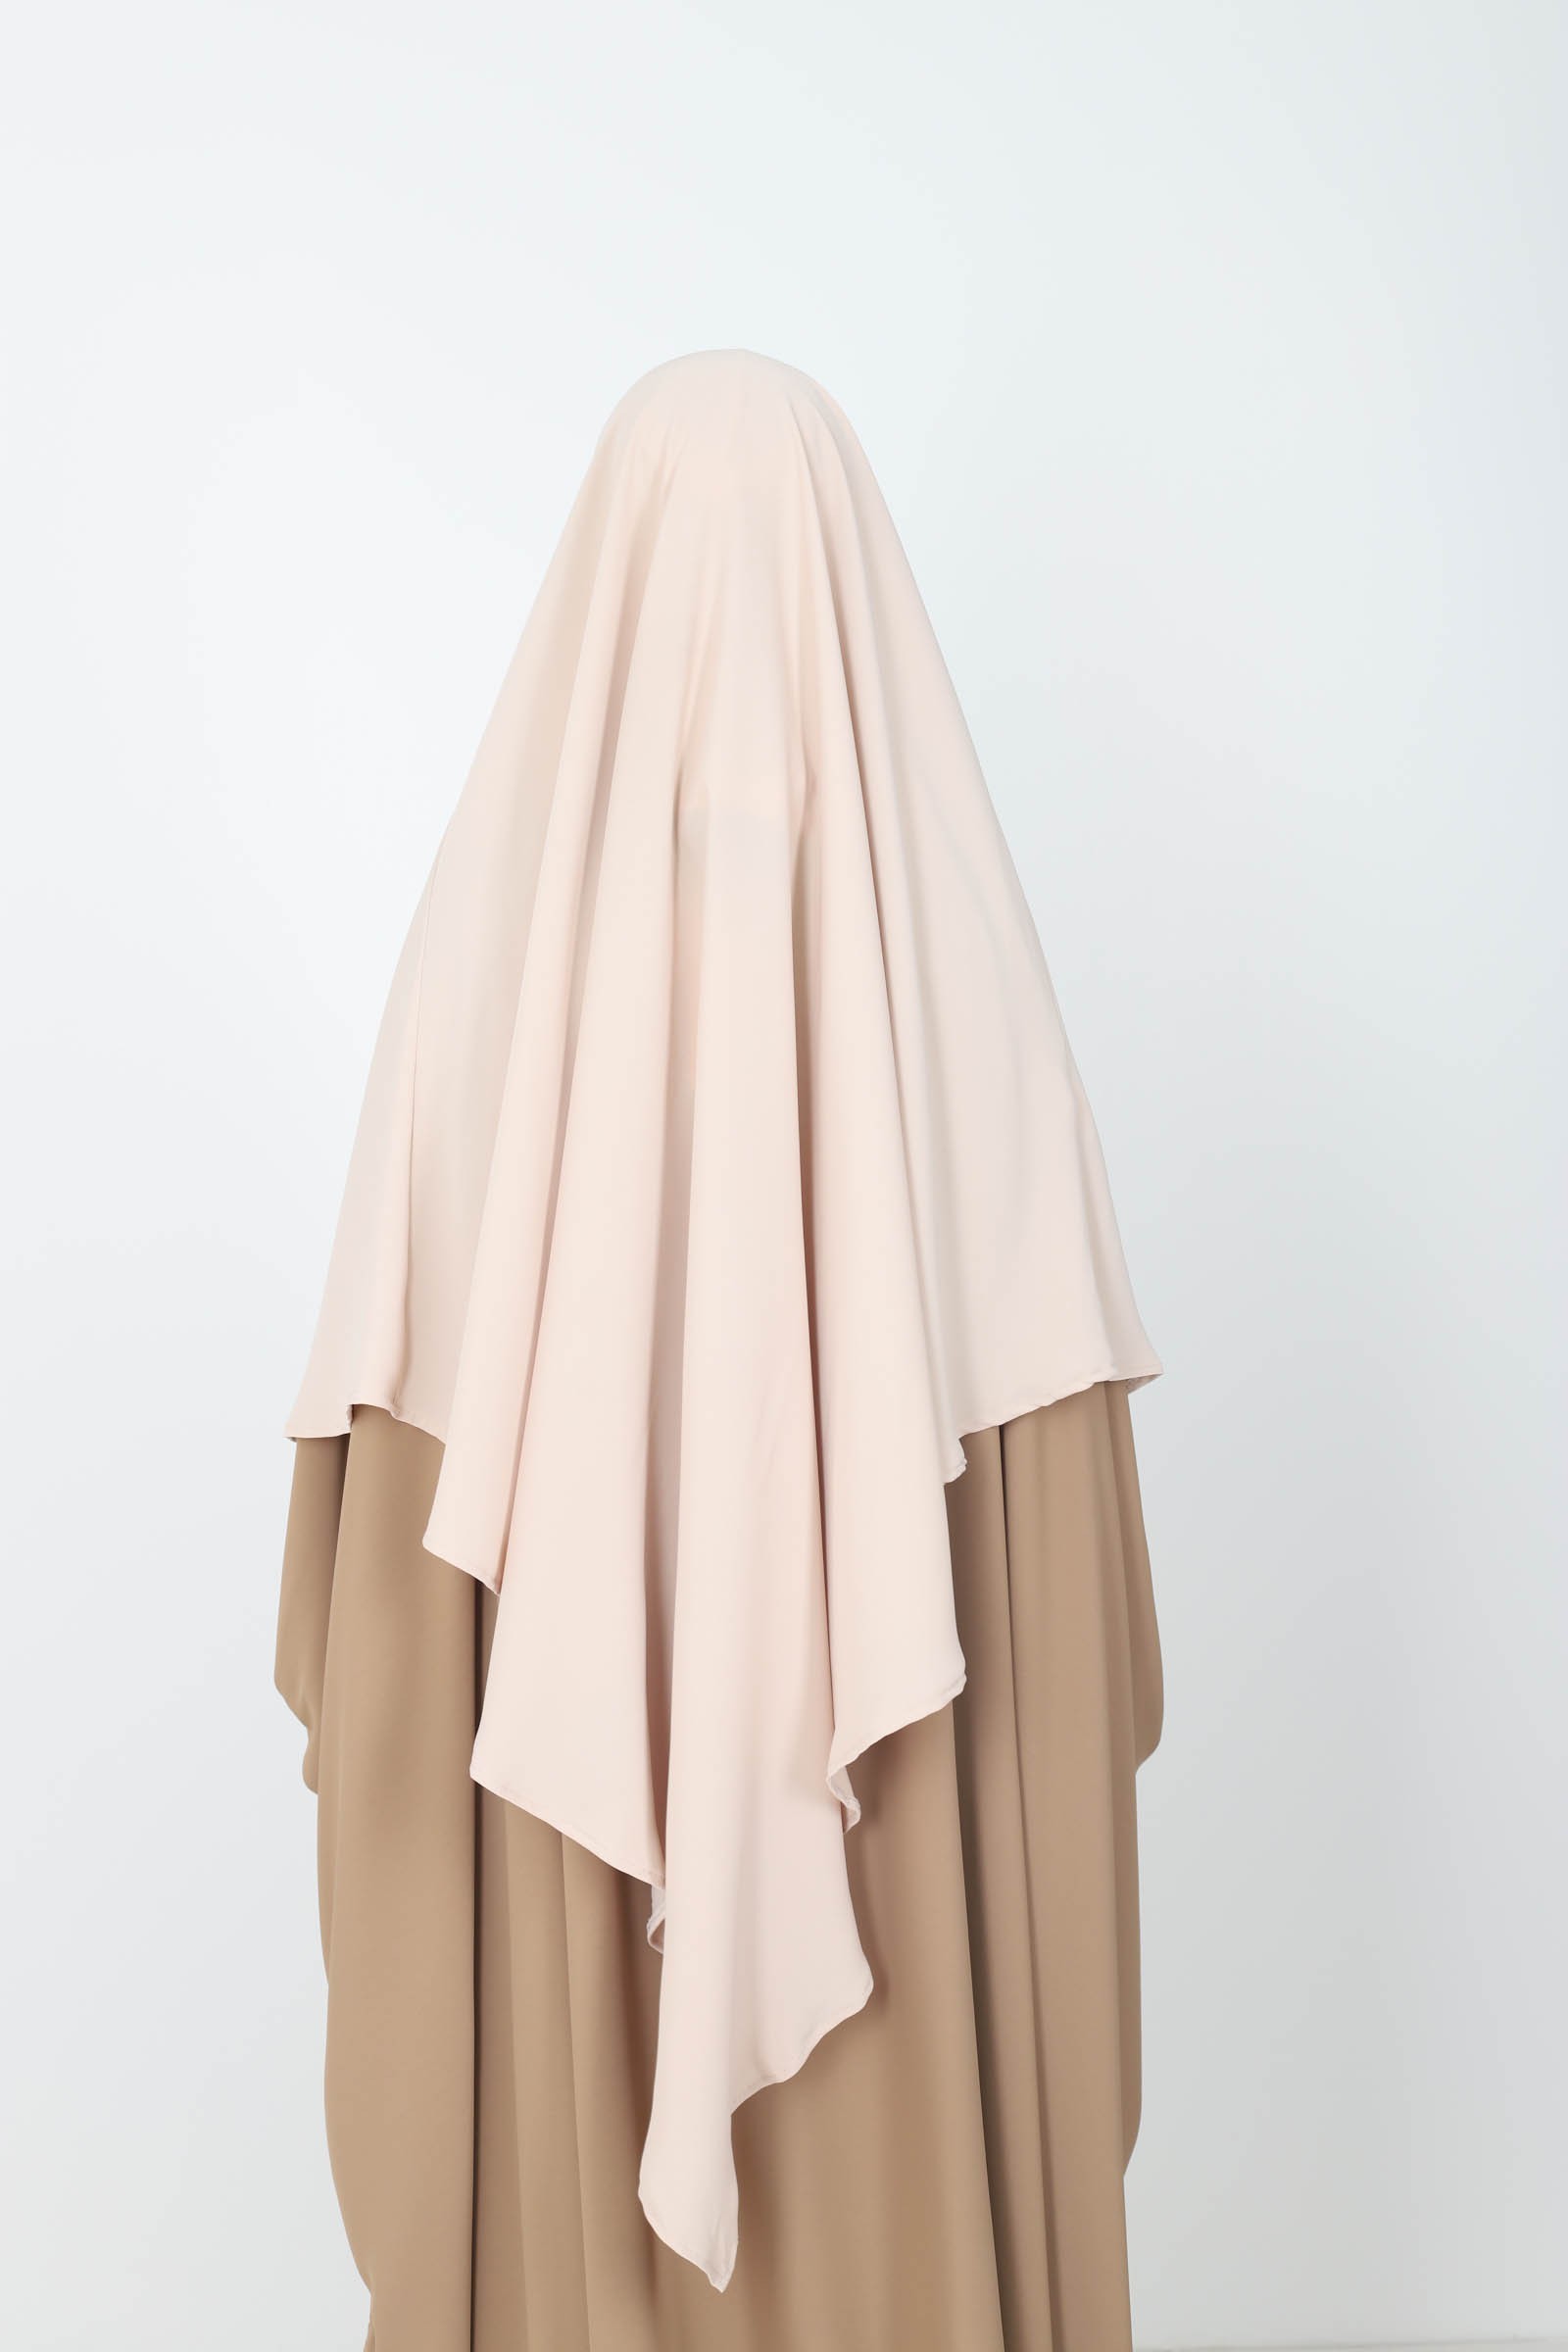 Khimar, a cheap Medina silk veil for Muslim women